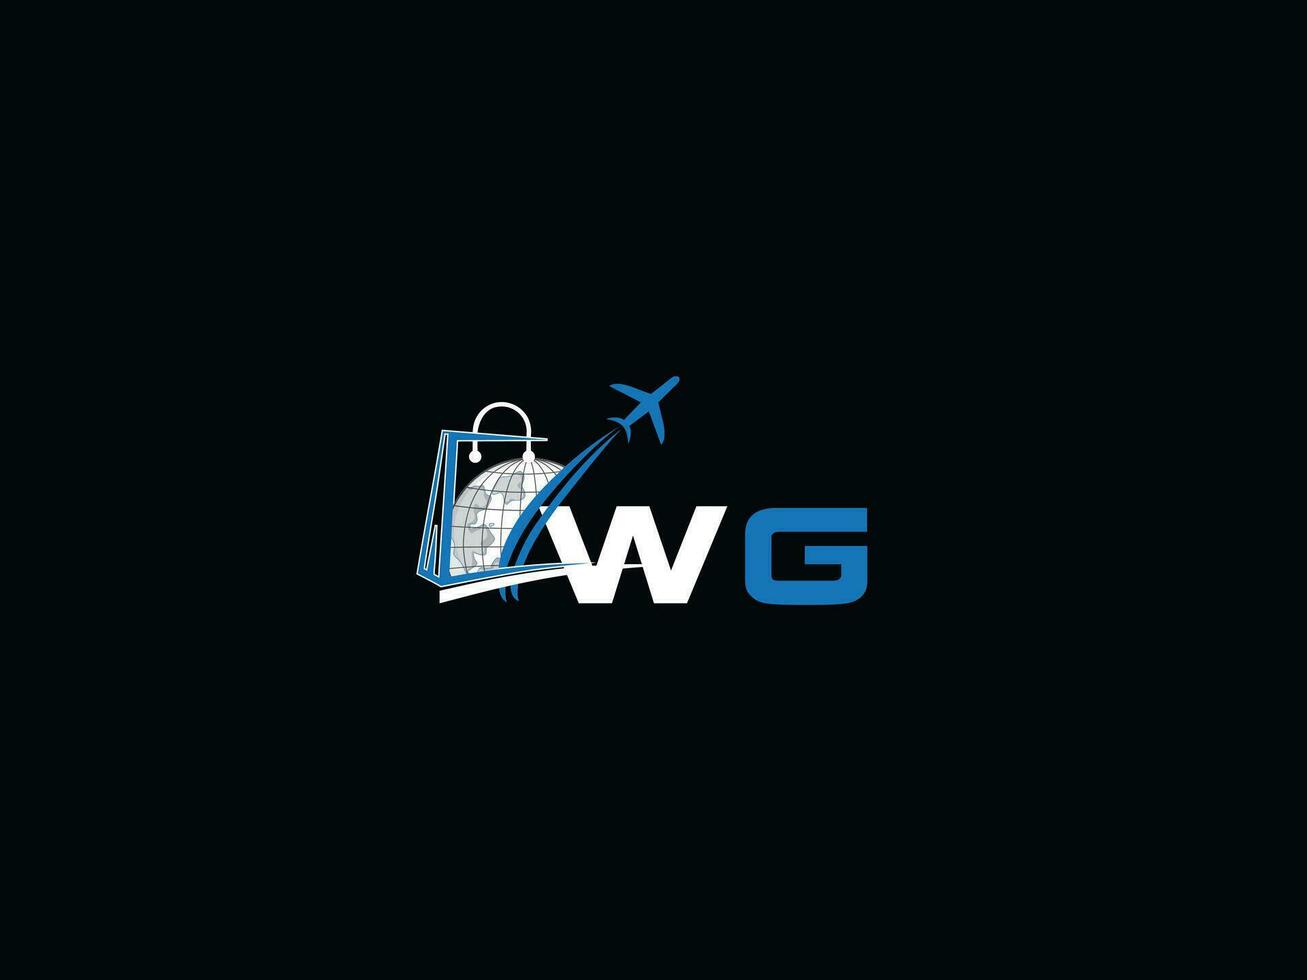 único aire viaje wg logo icono, creativo global wg inicial de viaje logo letra vector